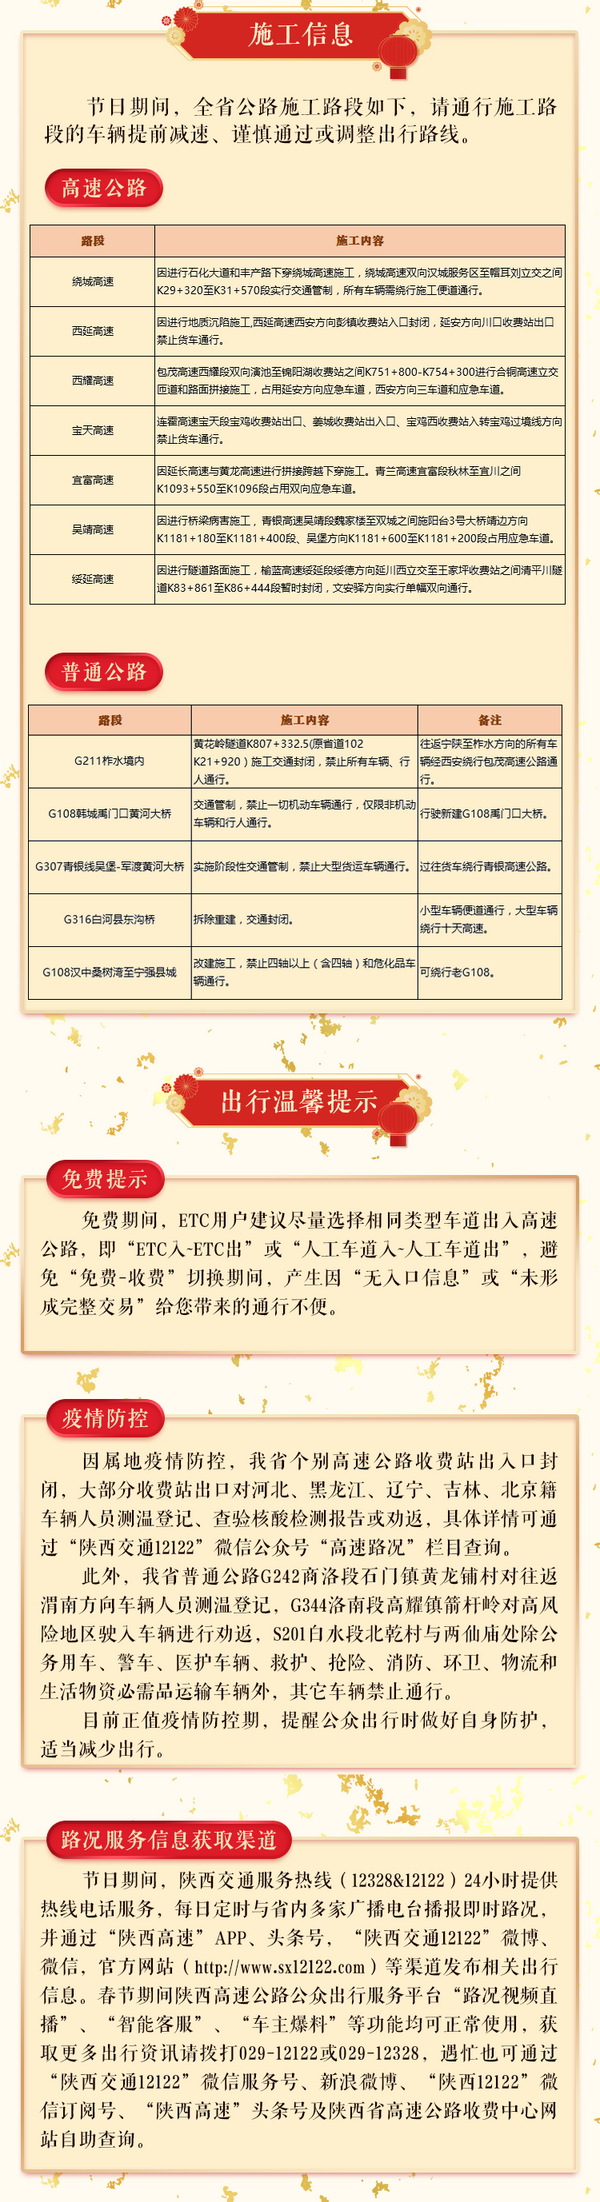 陕西省公安厅交警总队发布2021年春节交通安全预警提示